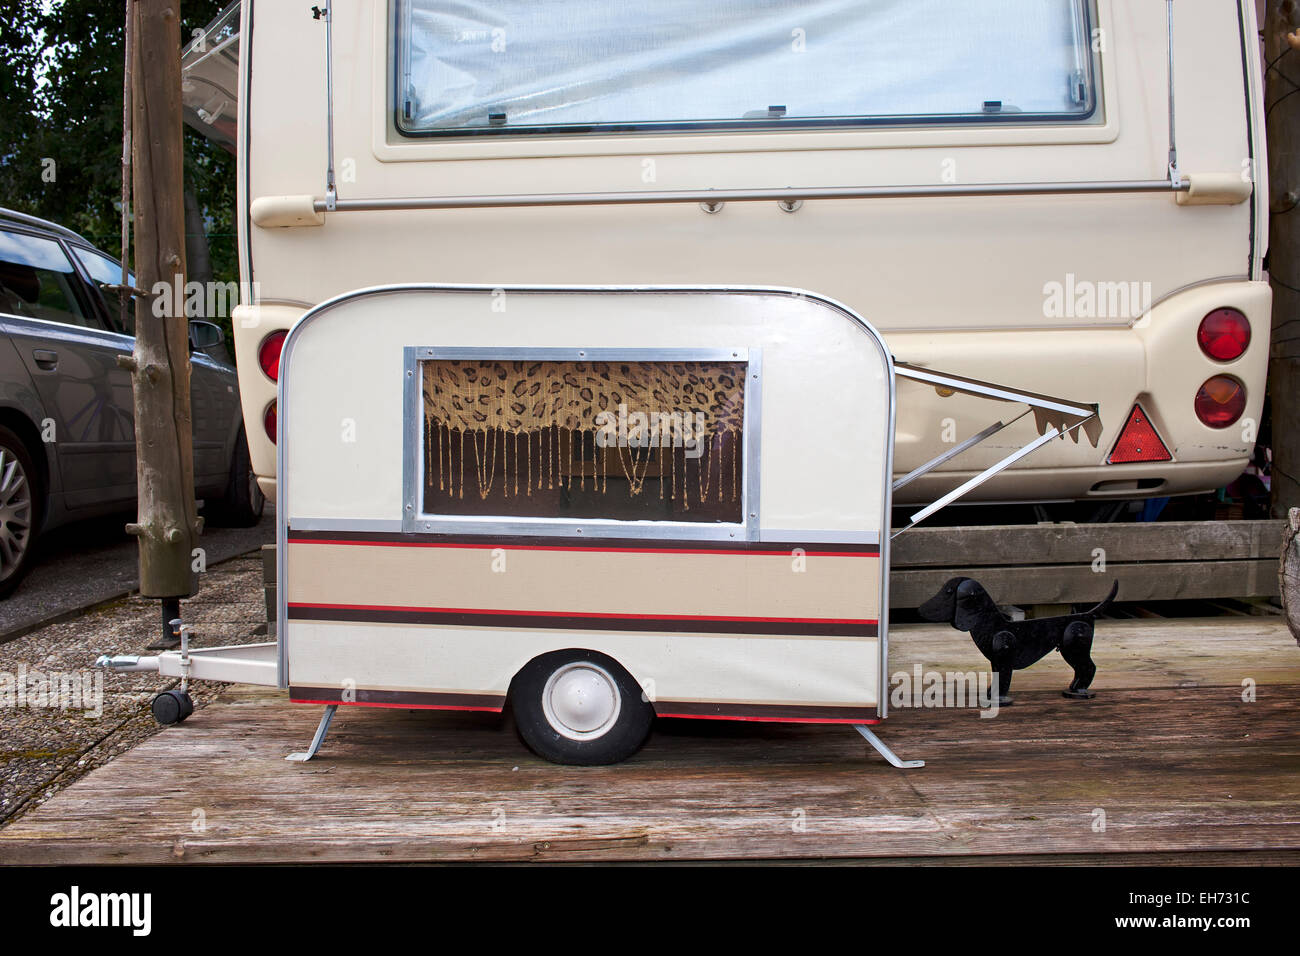 Kleines Modell Wohnwagen für einen kleinen Hund geparkt auf der